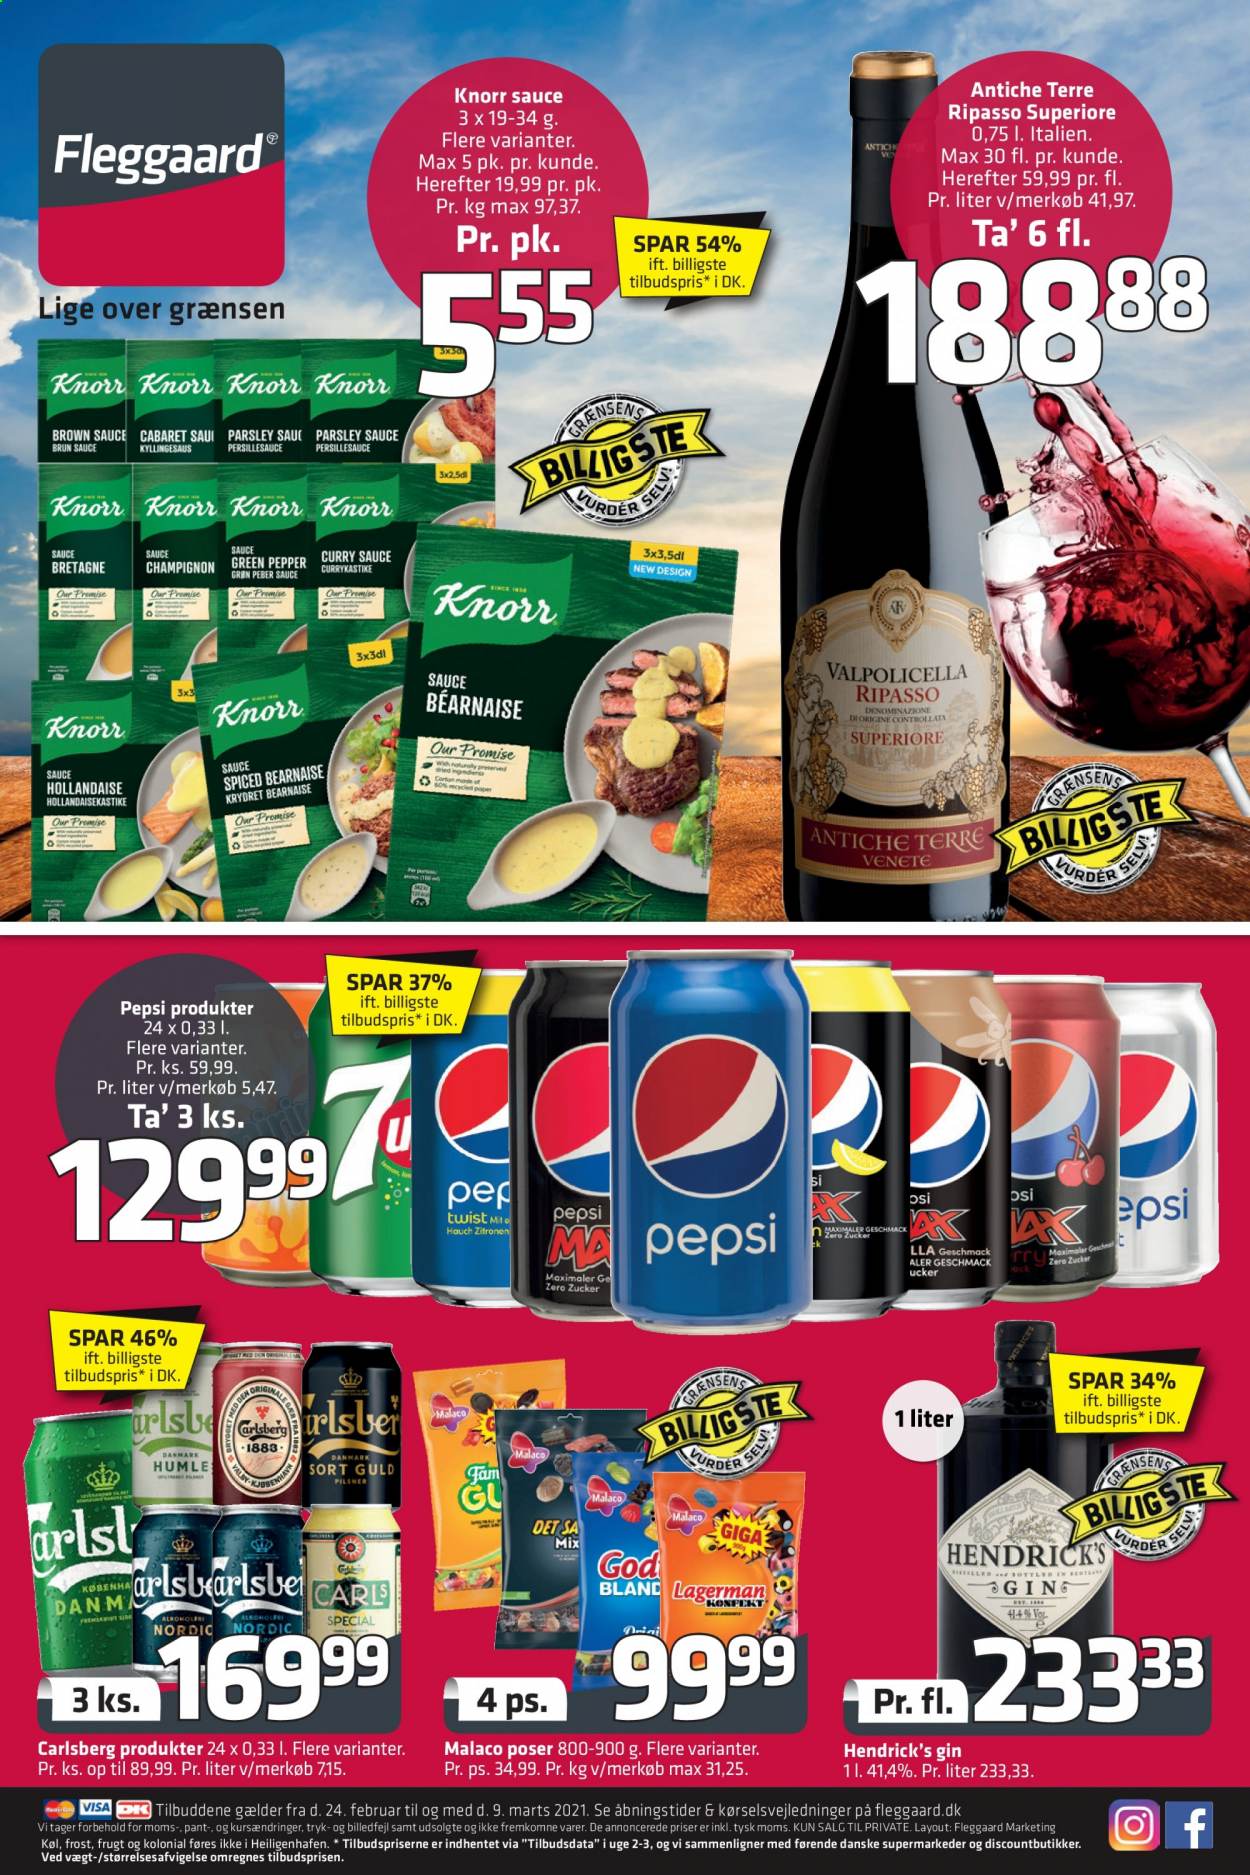 thumbnail - Fleggaard tilbud  - 24.2.2021 - 9.3.2021 - tilbudsprodukter - Carlsberg, Knorr, Pepsi, gin. Side 1.